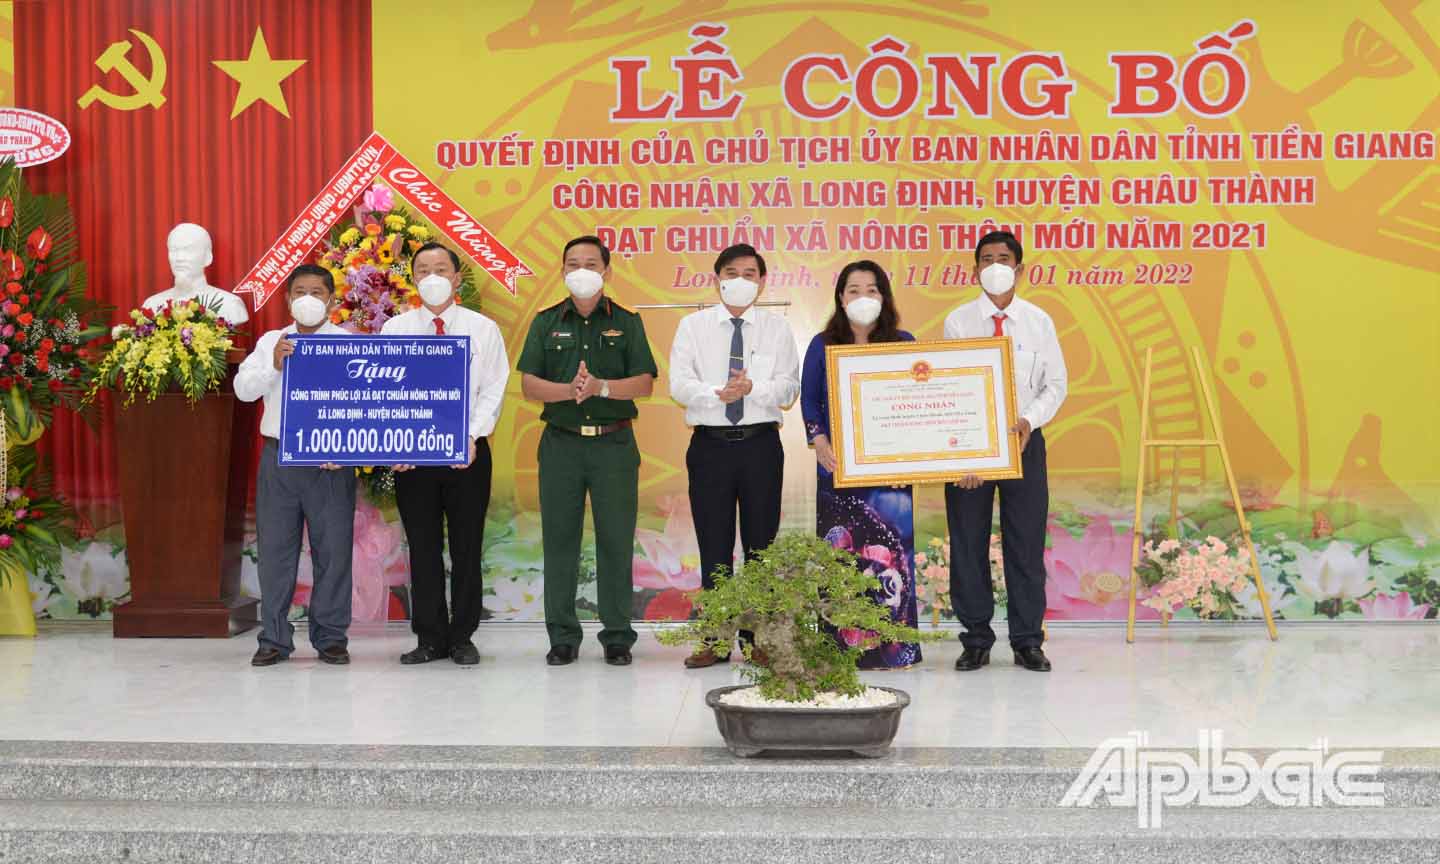 Đồng chí Nguyễn Văn Mười trao bằng công nhận xã đạt chuẩn NTM và Đại tá Phạm Văn Thanh trao bảng tượng trưng tặng công trình phúc lợi trị giá 1 tỷ đồng cho